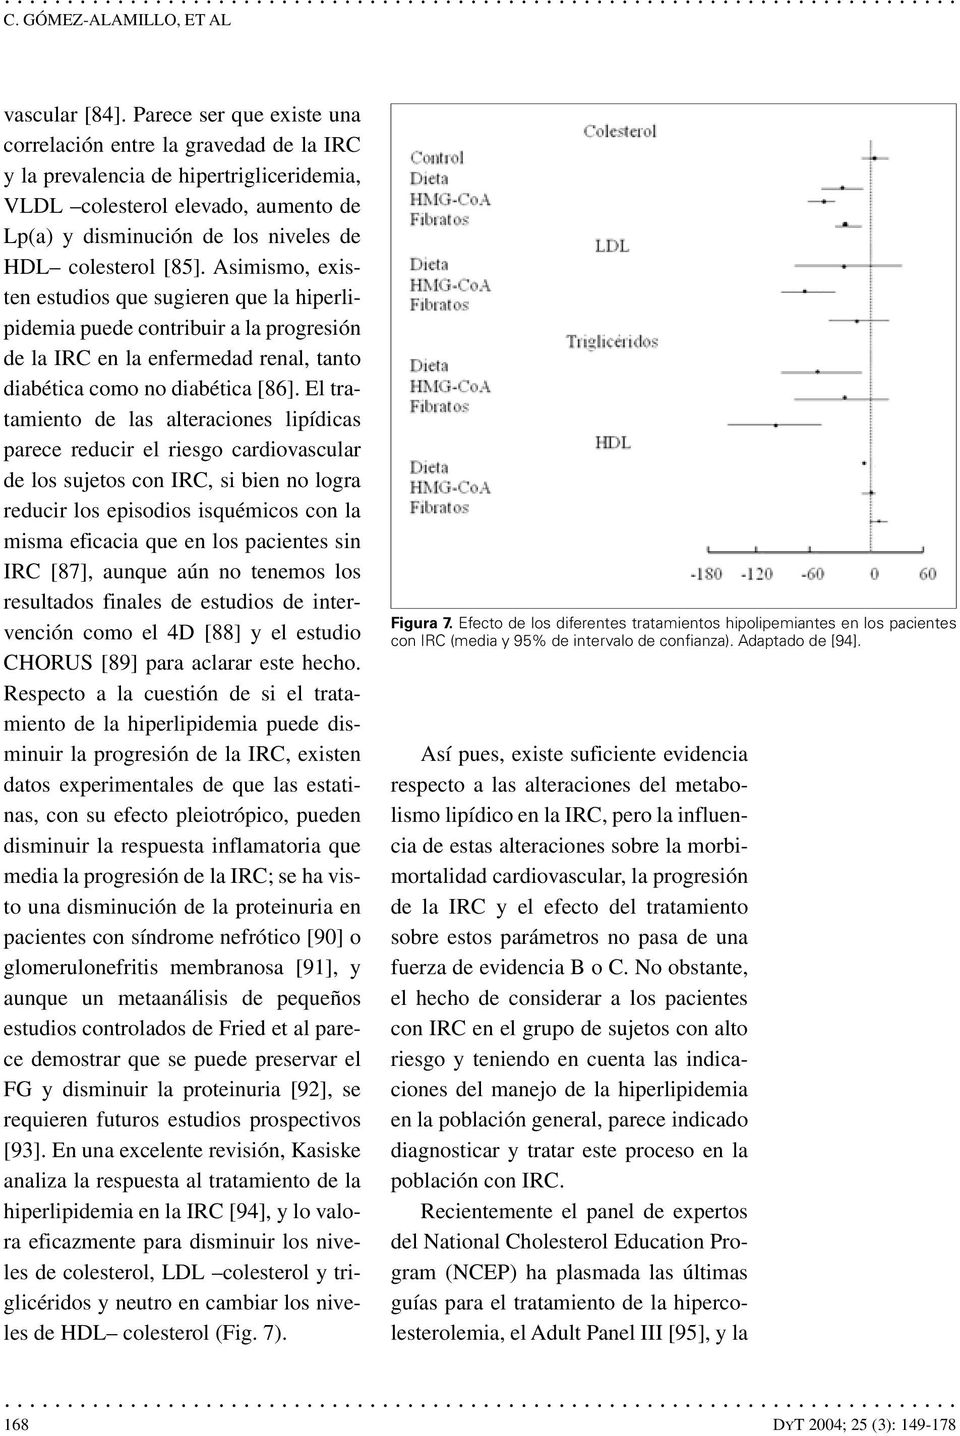 [85]. Asimismo, existen estudios que sugieren que la hiperlipidemia puede contribuir a la progresión de la IRC en la enfermedad renal, tanto diabética como no diabética [86].